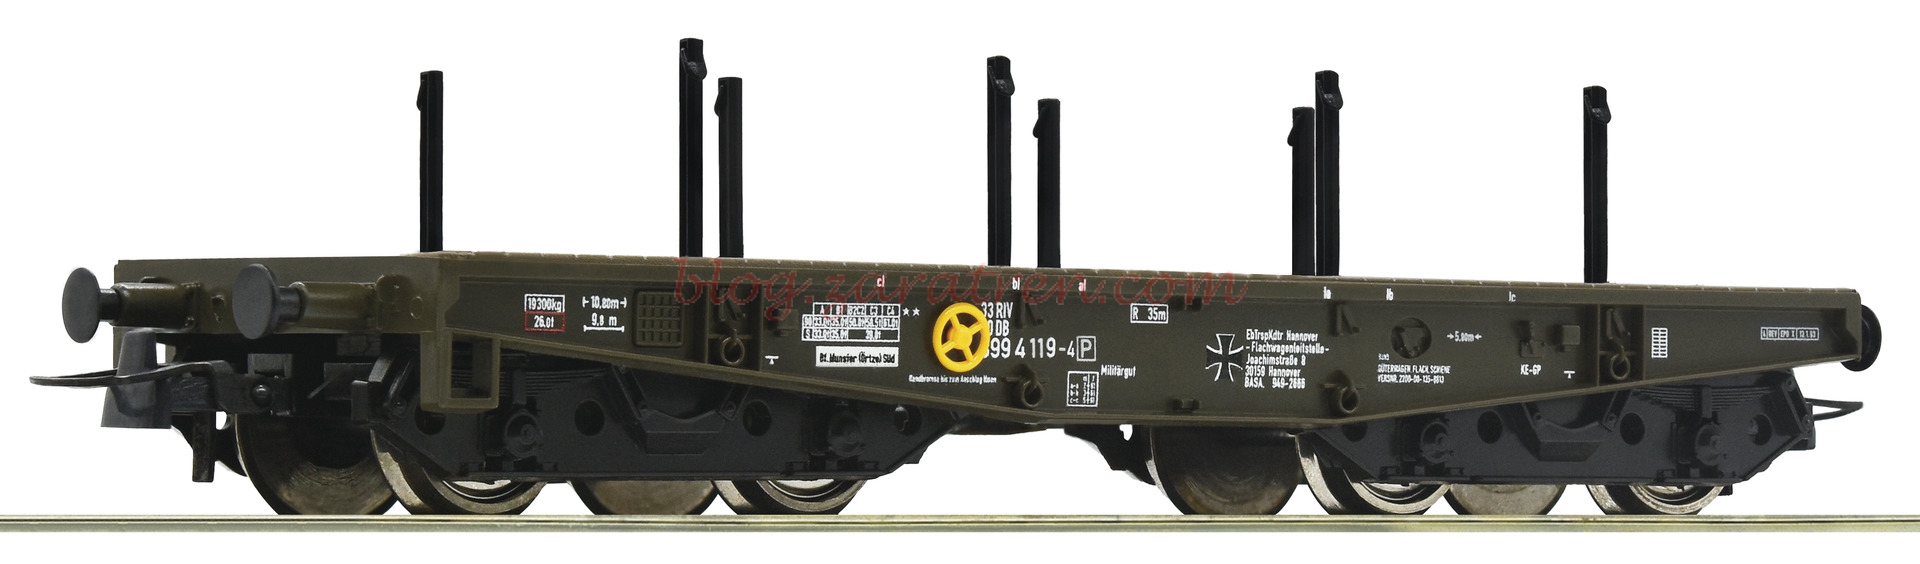 Roco – Vagón plataforma para transporte militar BW, Epoca V, Escala H0, Ref: 76391.